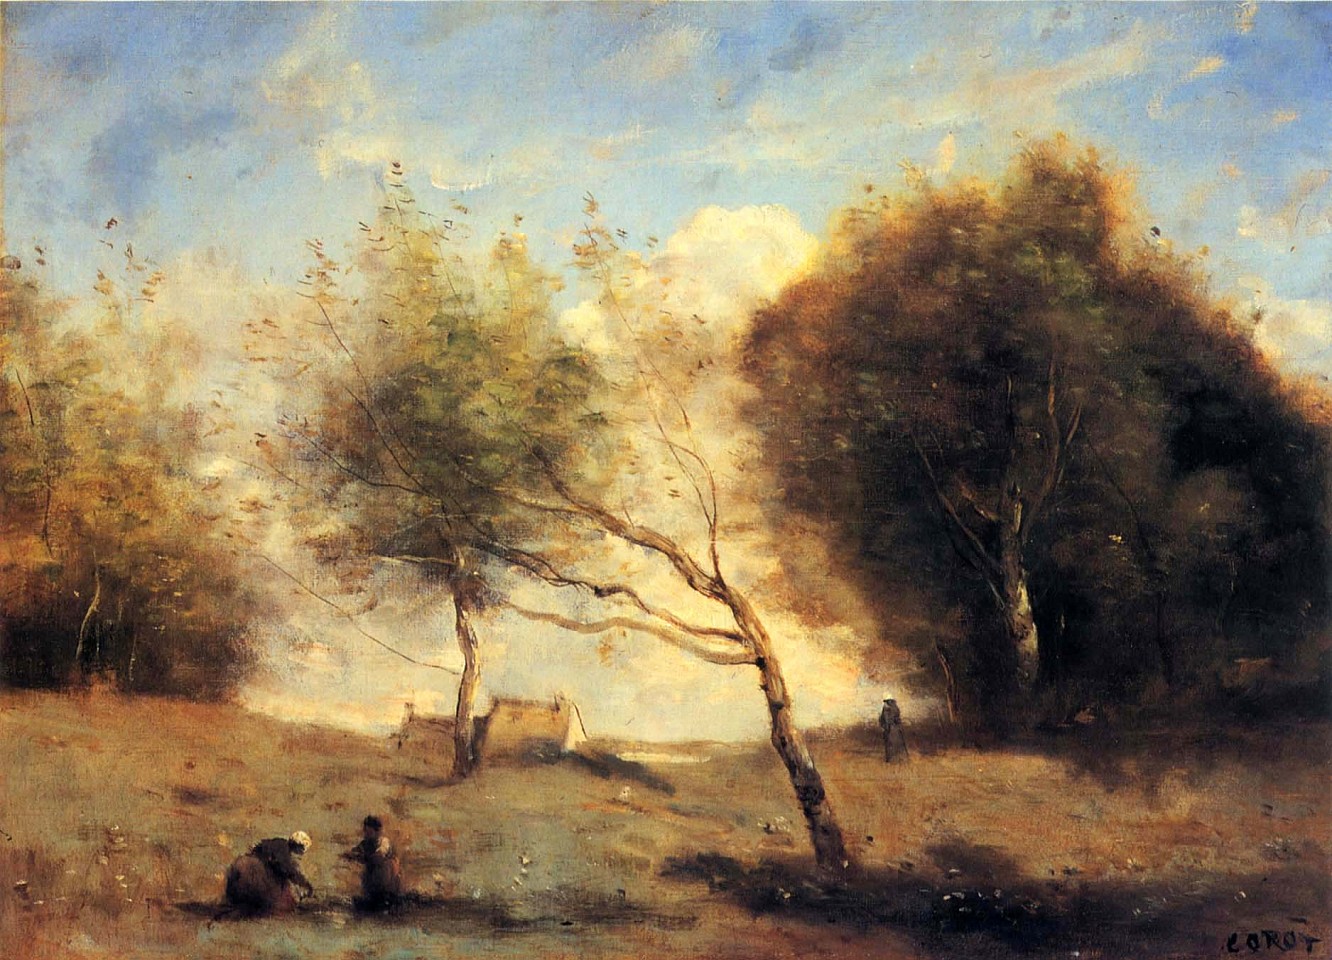 Jean Baptiste Camille Corot, Les Pres de la Petite Ferme, 1860-1870
Oil on canvas, 12 3/8 x 18 3/16 in. (33 x 46.3 cm)
COR-001-PA
Appraisal Value: $225,000 est.
User2: $0.00
User3: $0.00